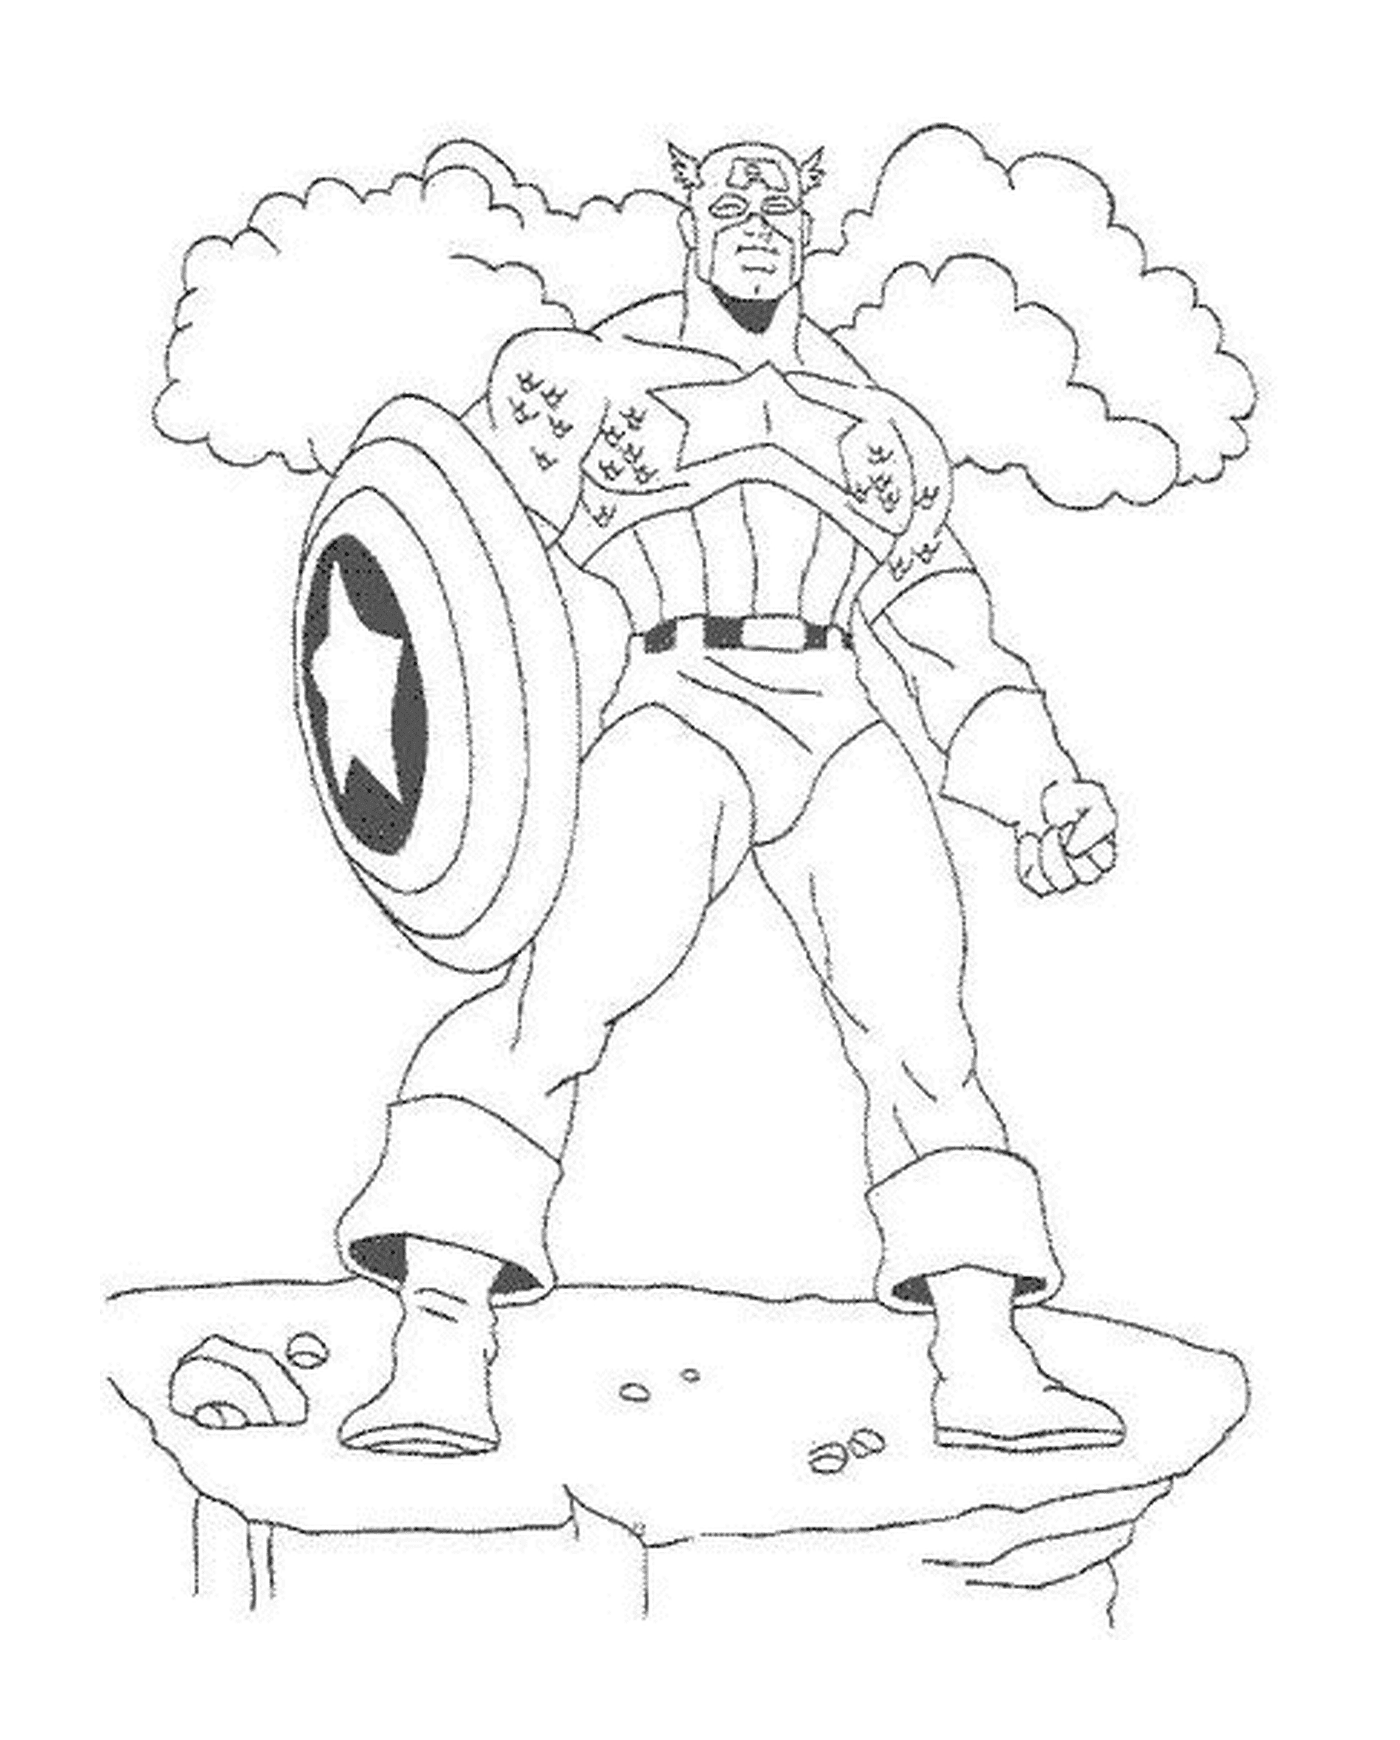  Captain America mit seinem Vibranium-Schild, Bild eines Captain America 